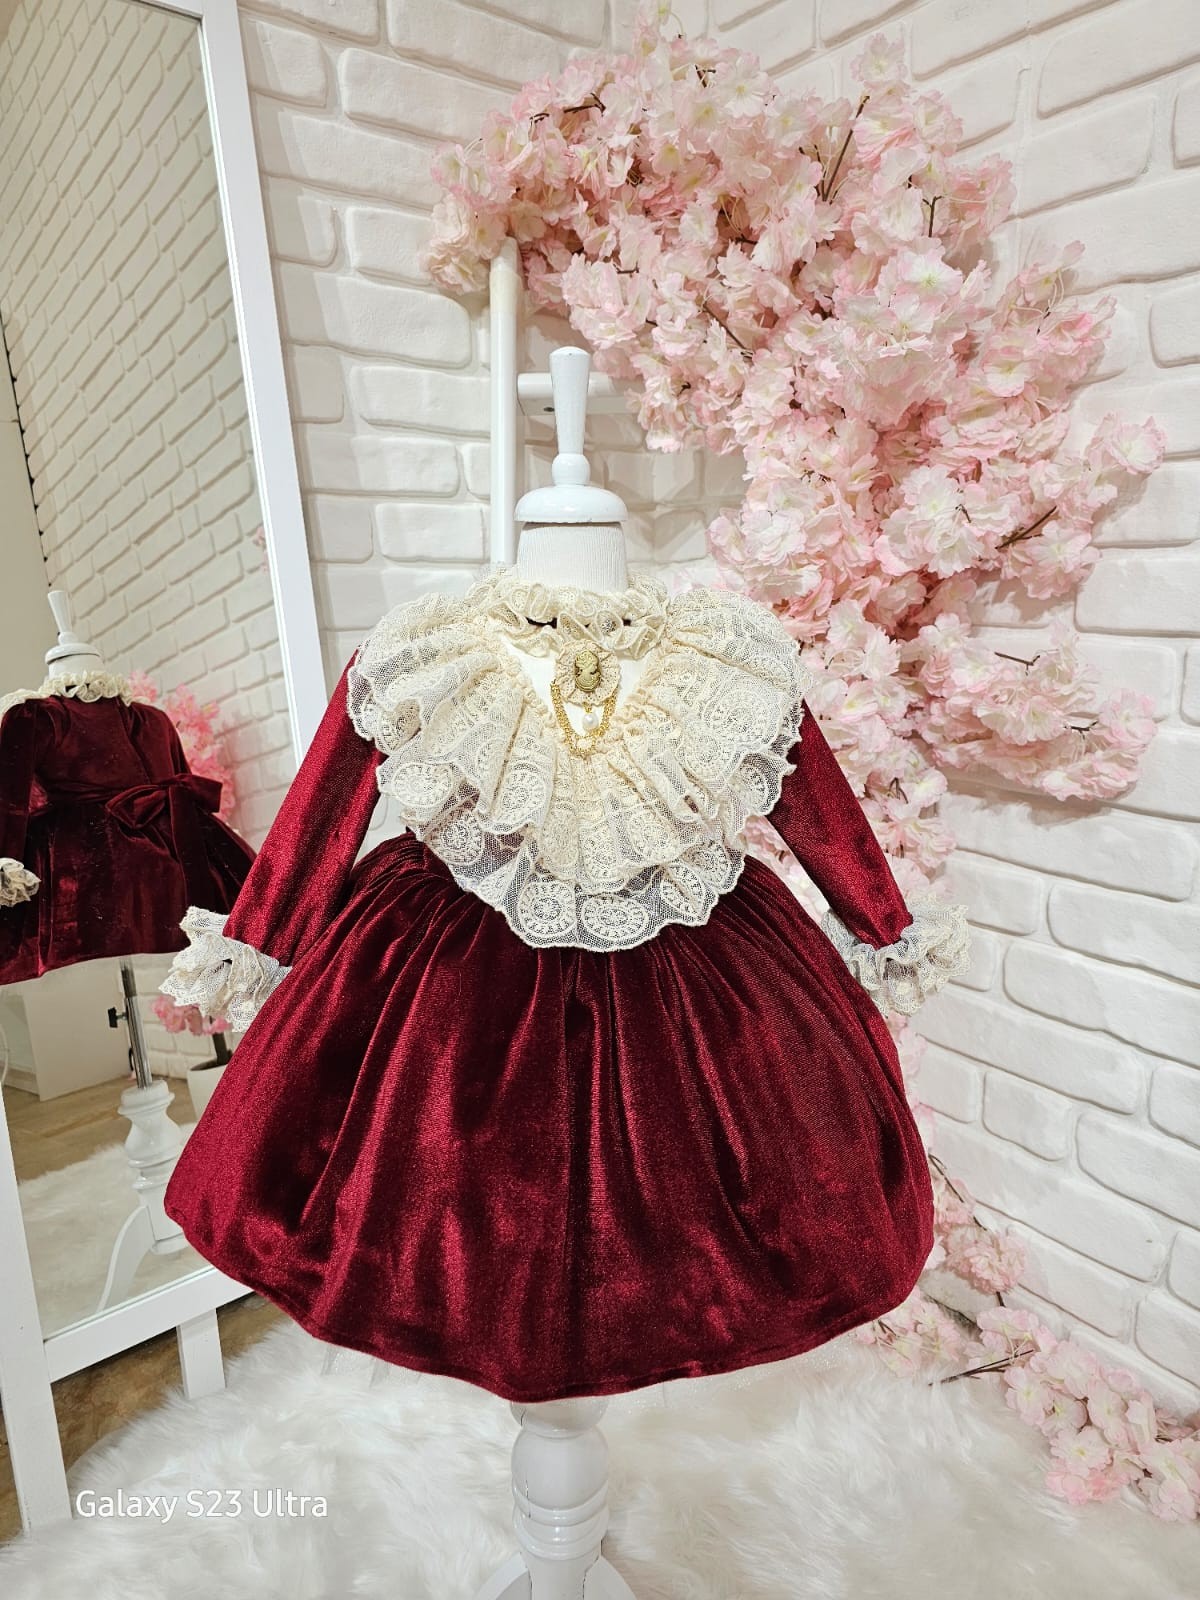 Bordo Kadife Kız Bebek Elbisesi,Doğum günü elbise,fotoğraf çekim elbisesi,0-10 Yaşa Uygun